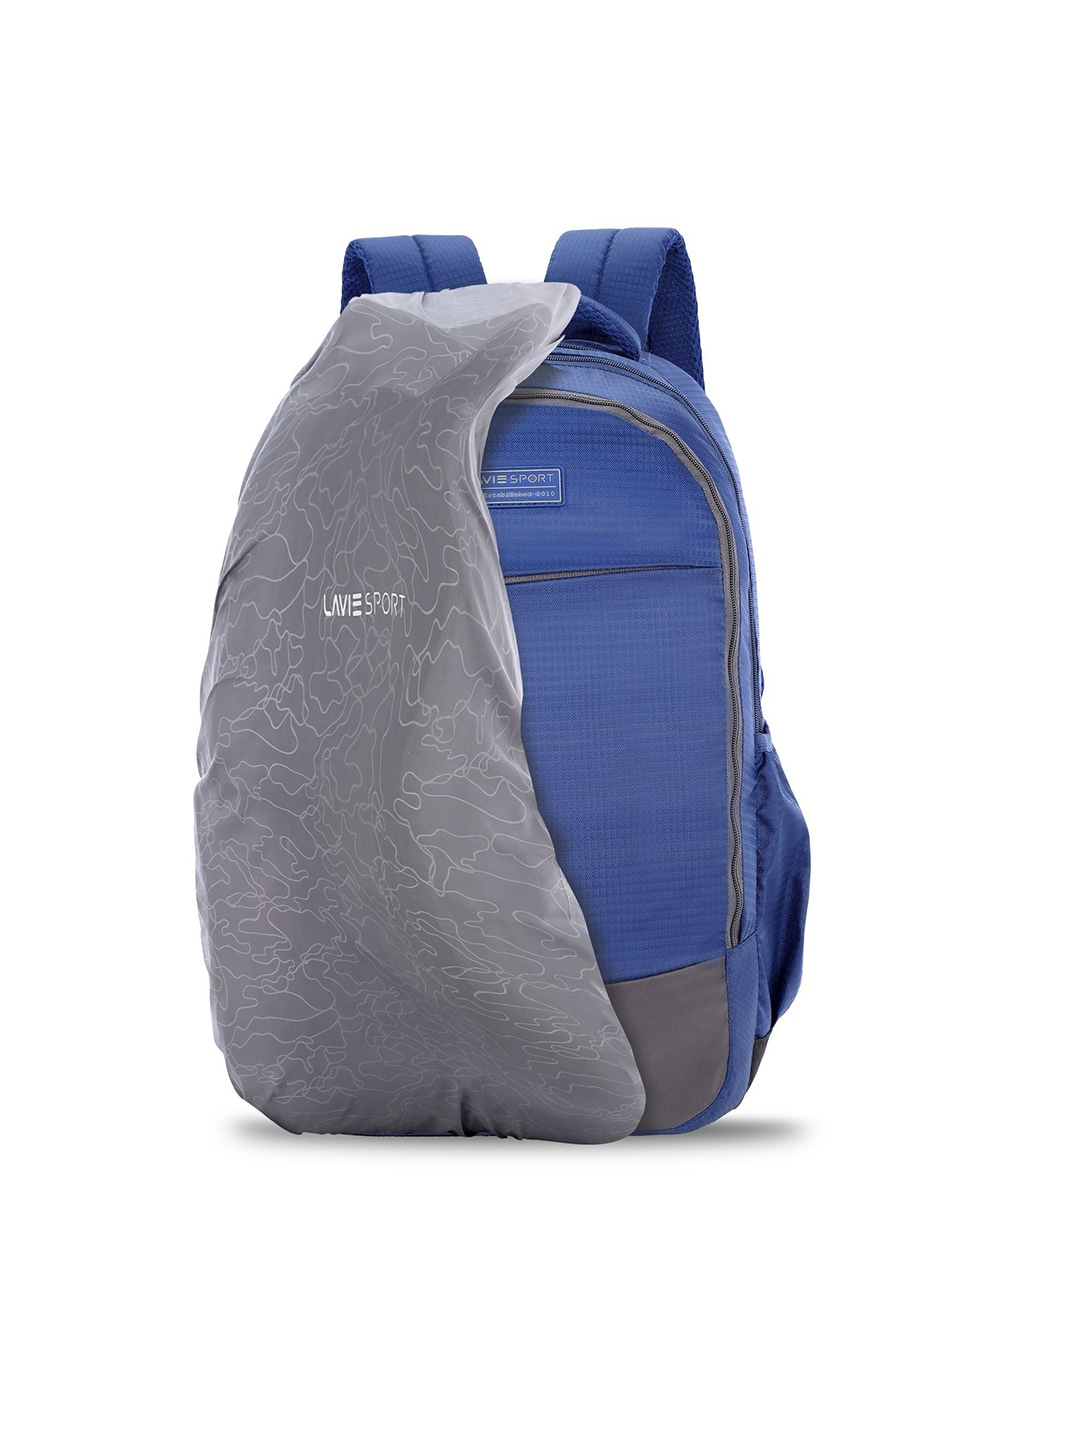 LAVIE SPORT Unisex Navy Blue Backpack